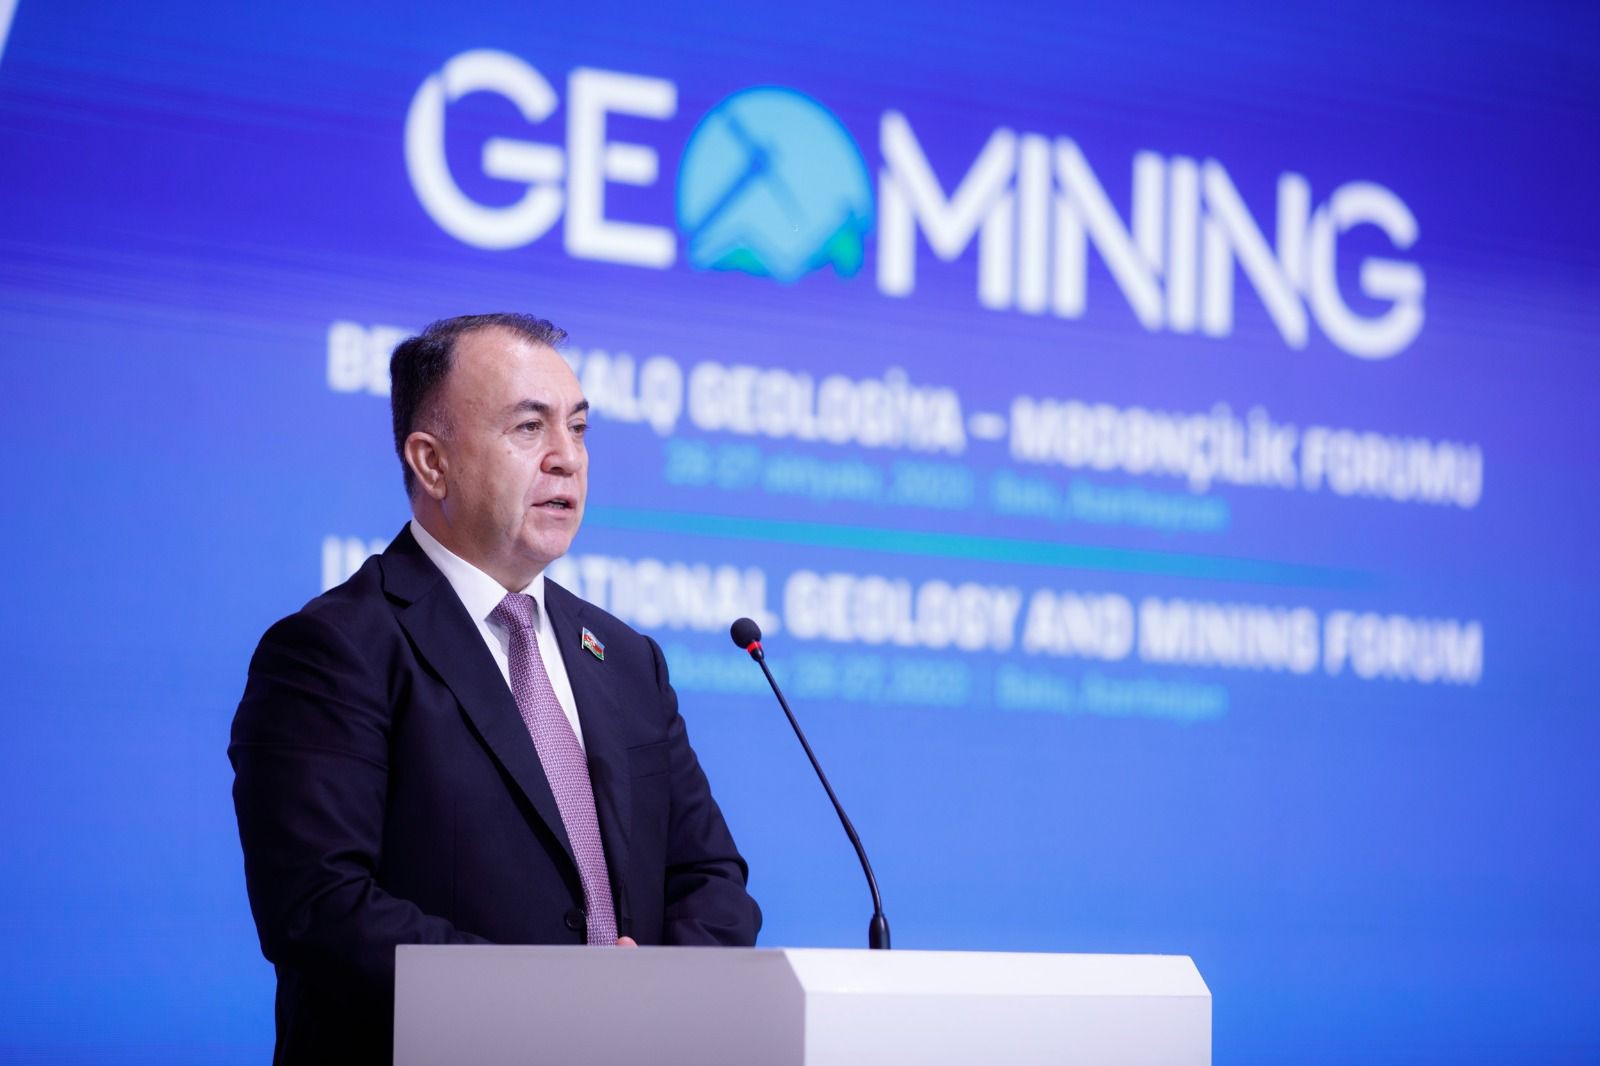 Beynəlxalq Geologiya-Mədənçilik Forumunun rəsmi açılış mərasimi keçirilib-